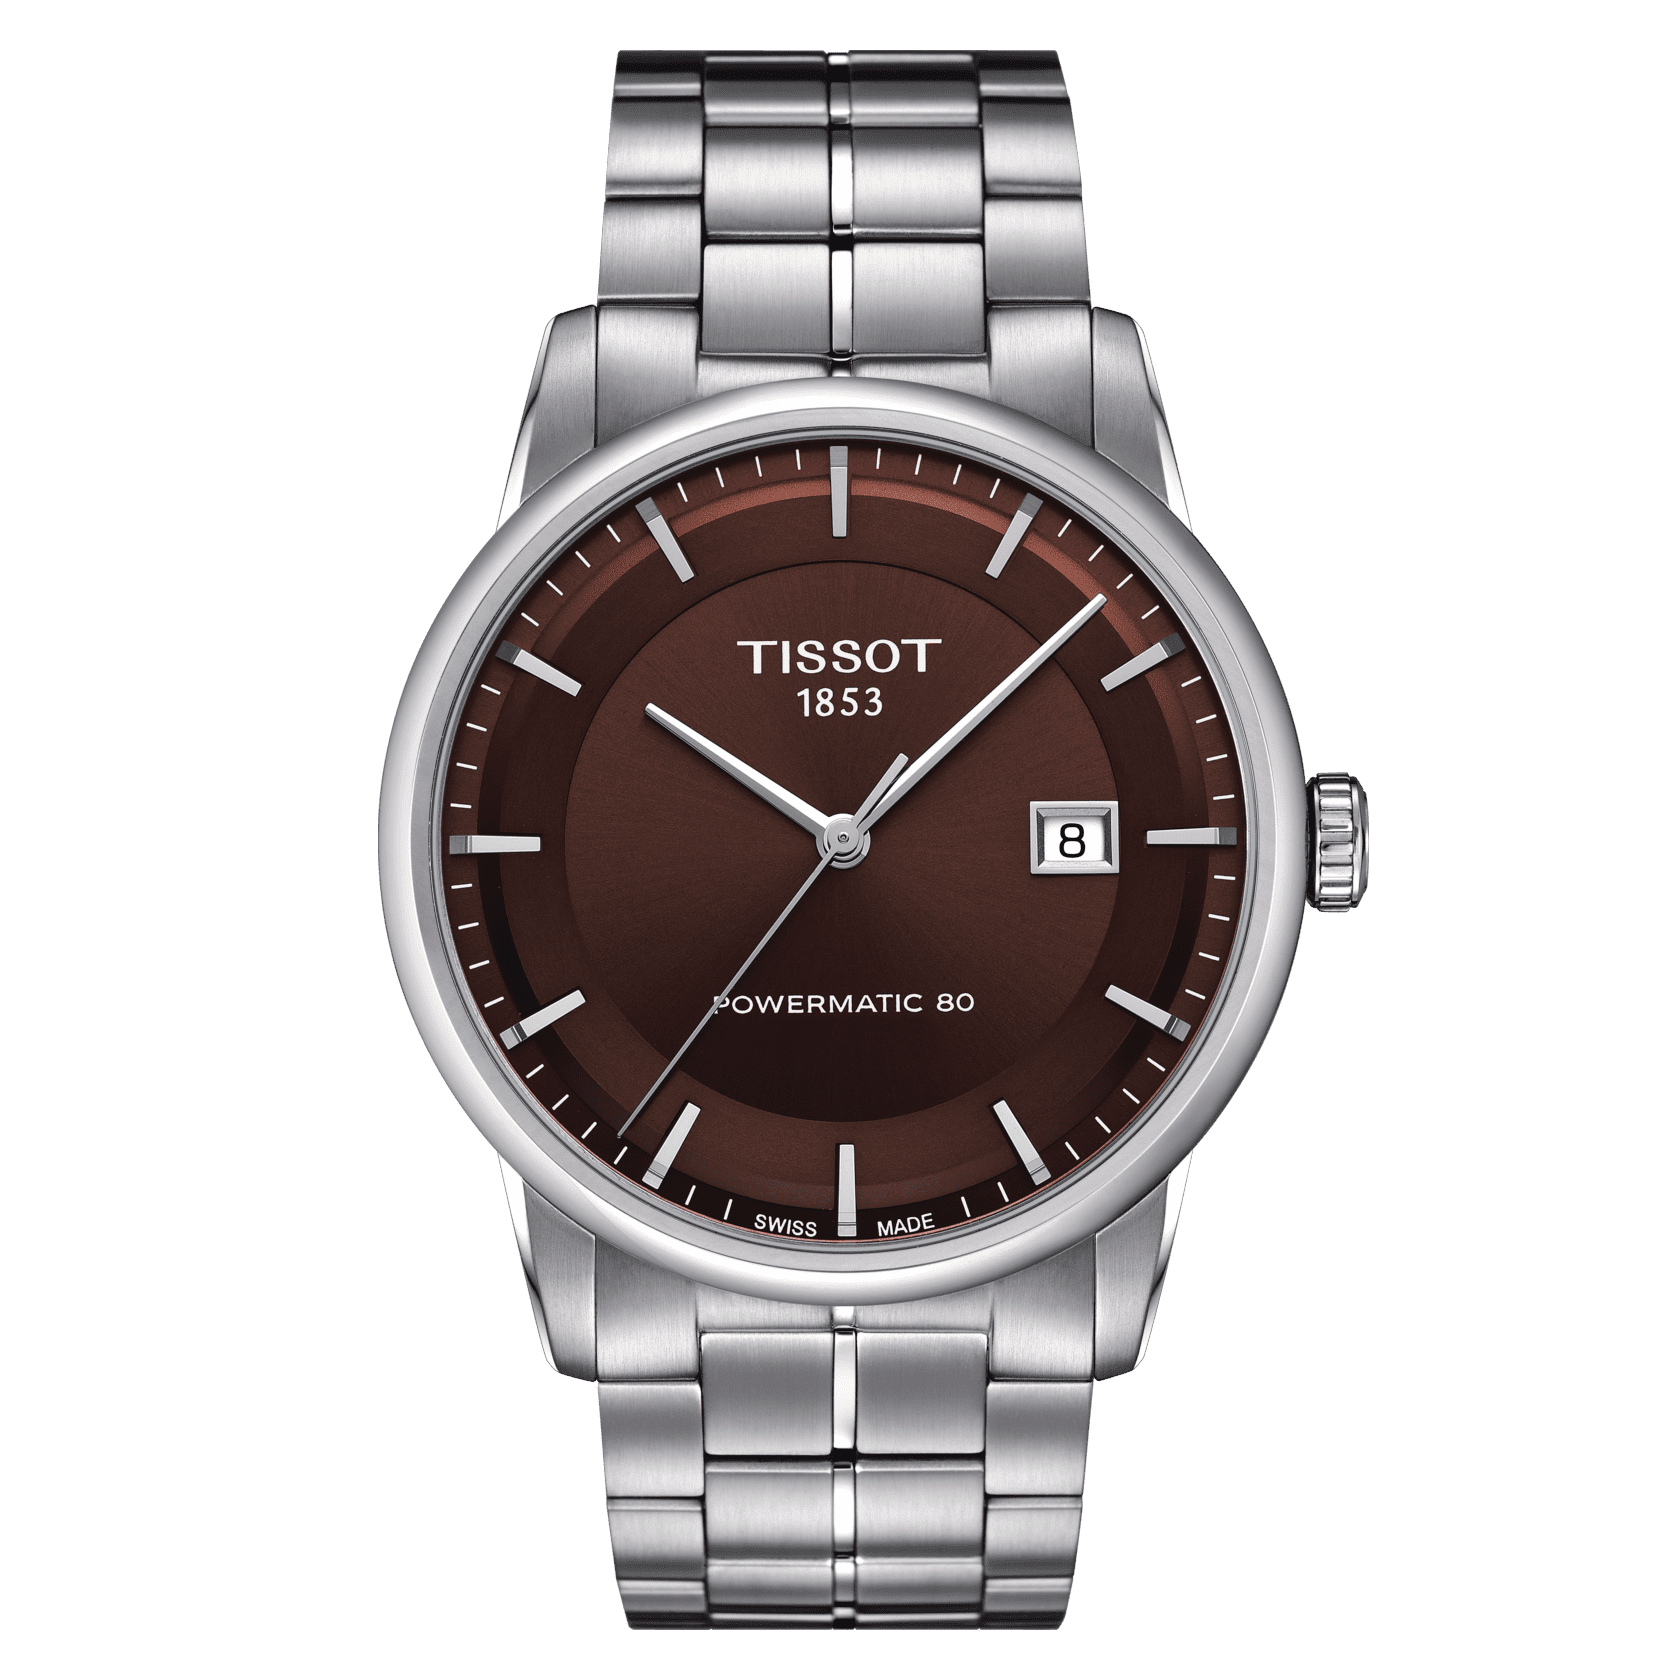 Hermes Apple Watch Bands Replica